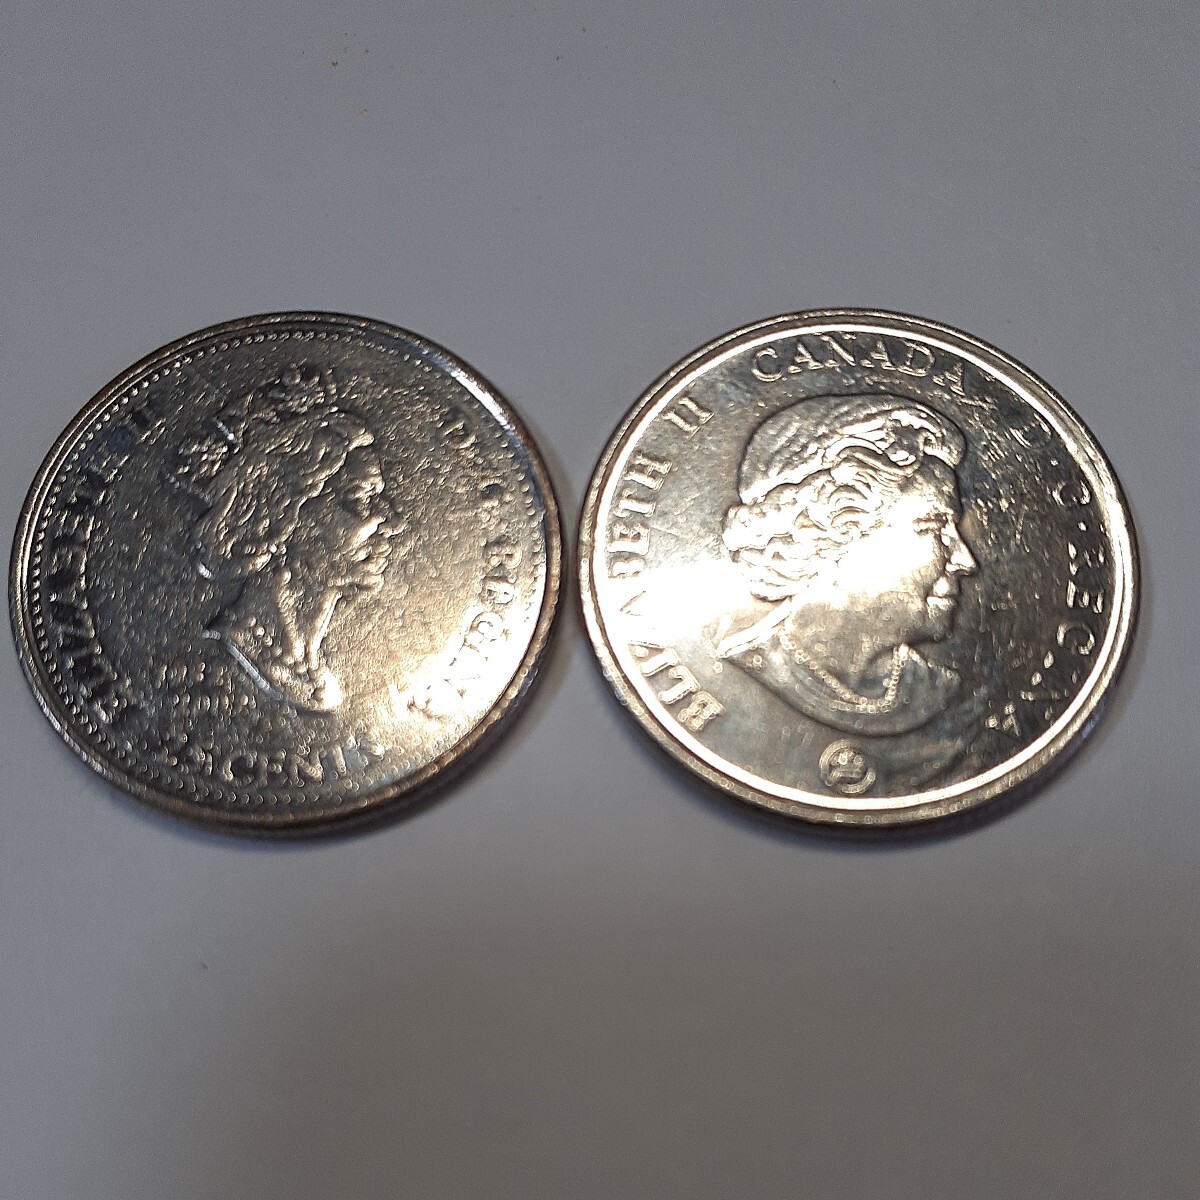 カナダ循環記念 (カナダ勇気のメダル 2006) &エリザベス女王50周年記念25セント硬貨1952-2002(ニッケルメッキ鋼)直径:約23.8mm 重量:約4.4gの画像3